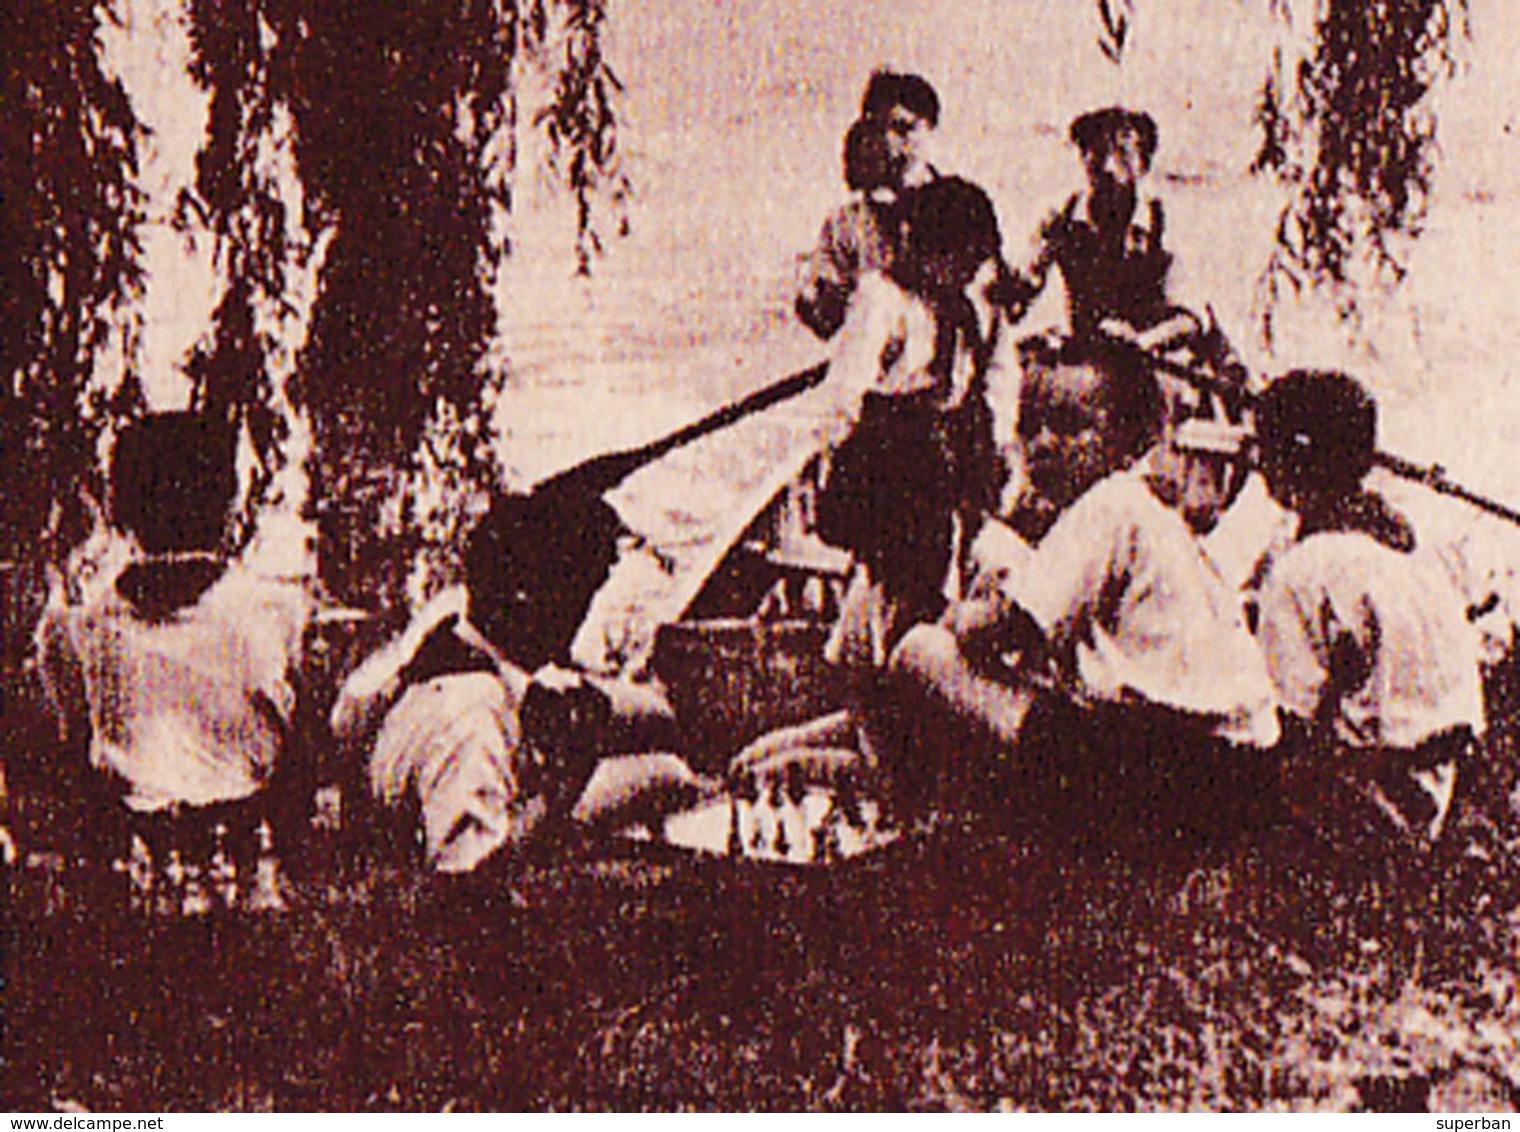 ÉCHECS / CHESS : ENFANTS JOUANT AUX ÉCHECS En ROUMANIE / CHILDREN PLAYING CHESS In ROMANIA ~ 1950 - '52 - RRR ! (ab778) - Echecs